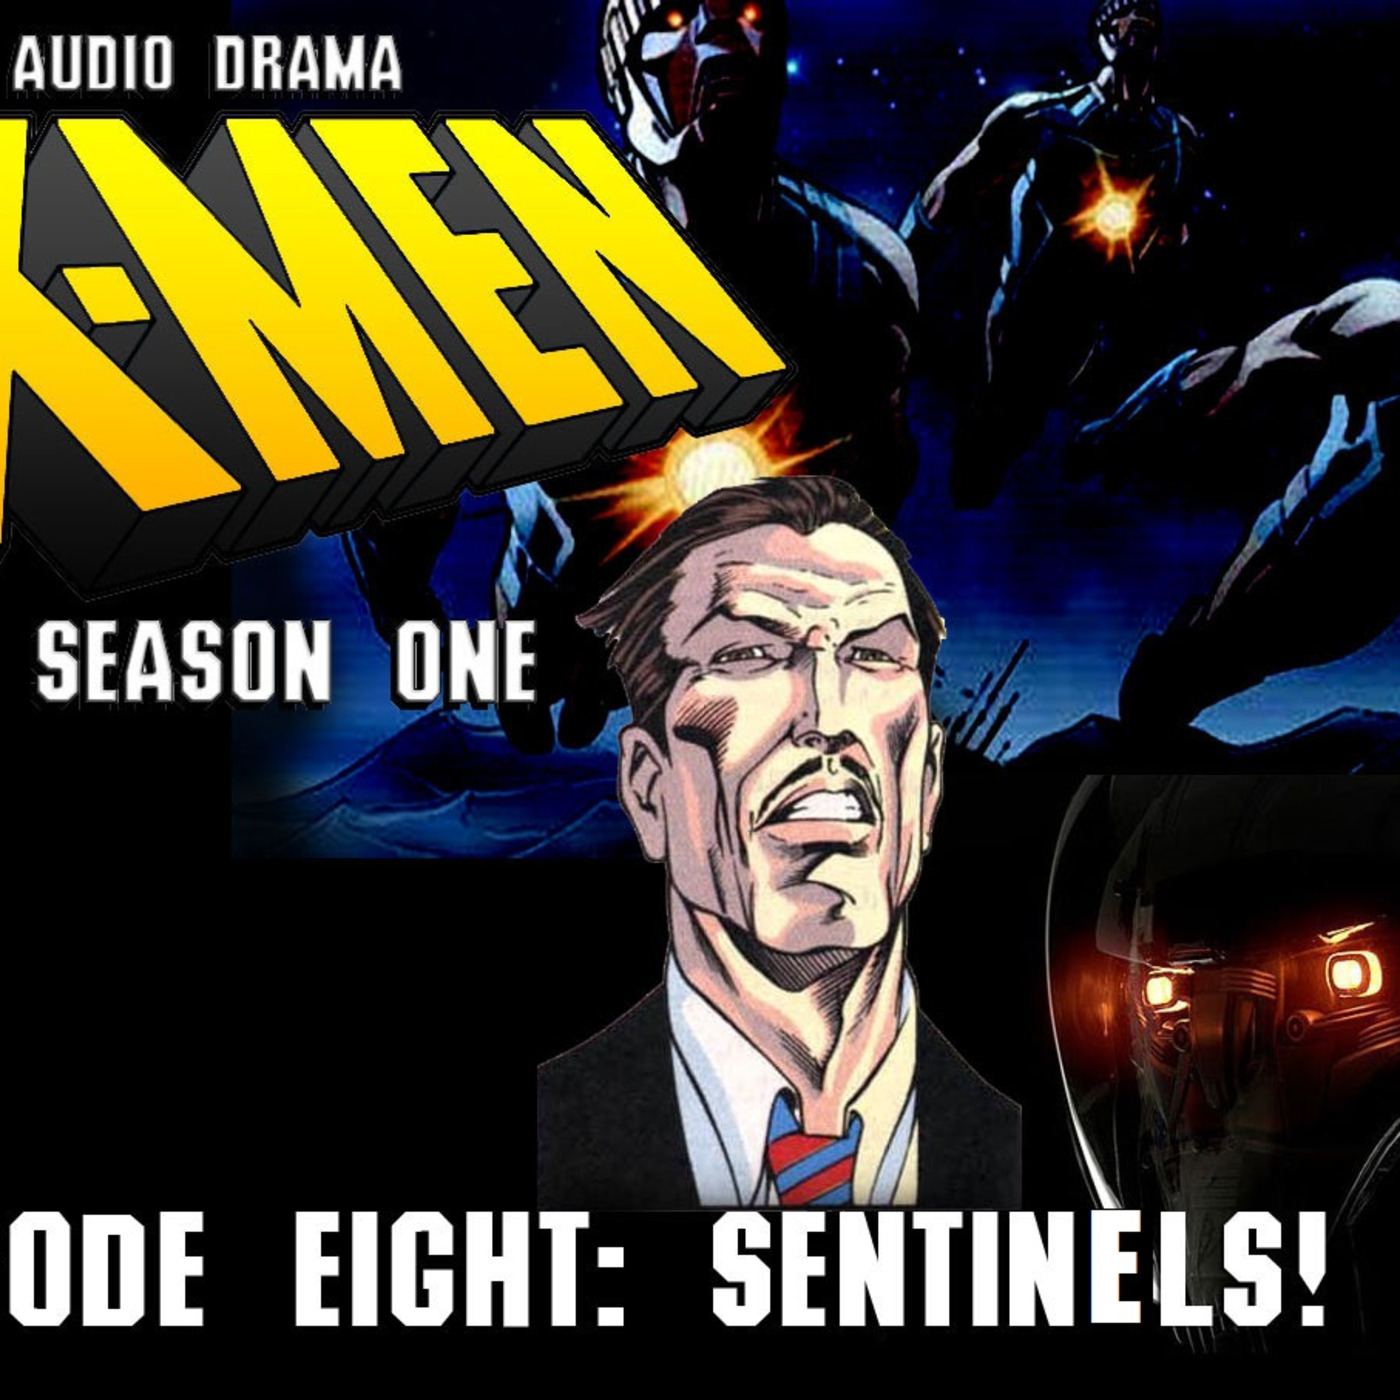 Episode 8: S1 Episode 8: Sentinels